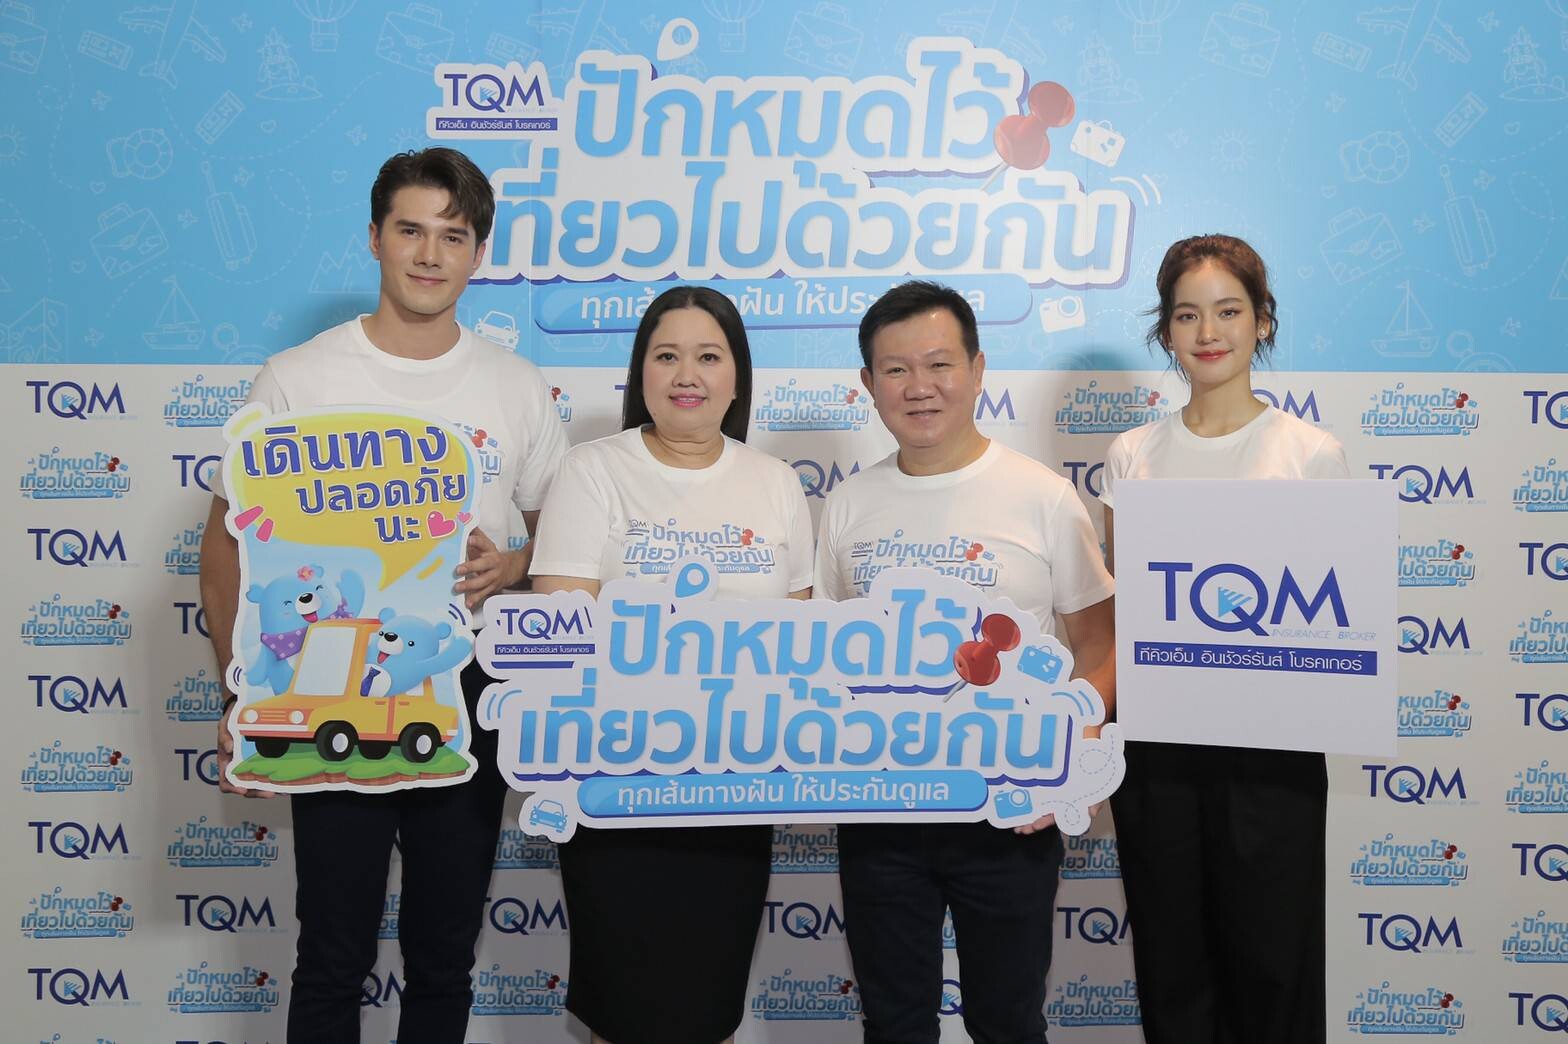 TQM ขานรับเที่ยวไทยหลังปลดล็อค ส่งแคมเปญ “ปักหมุดไว้เที่ยวไปด้วยกัน” พร้อมแนวคิดเที่ยวสุขใจพกประกันภัยติดตัว